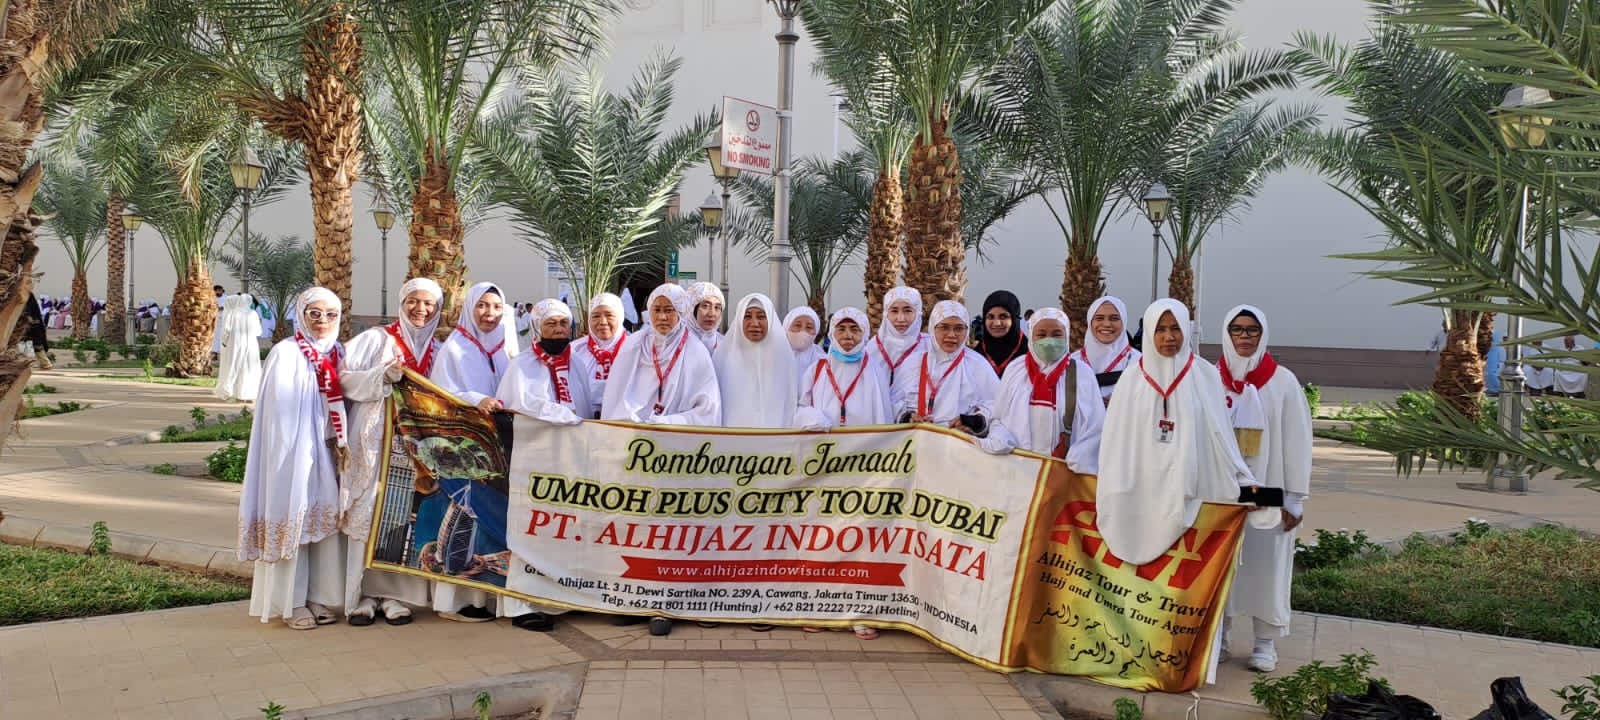 Paket Umroh Dan Haji Plus Murah Surabaya